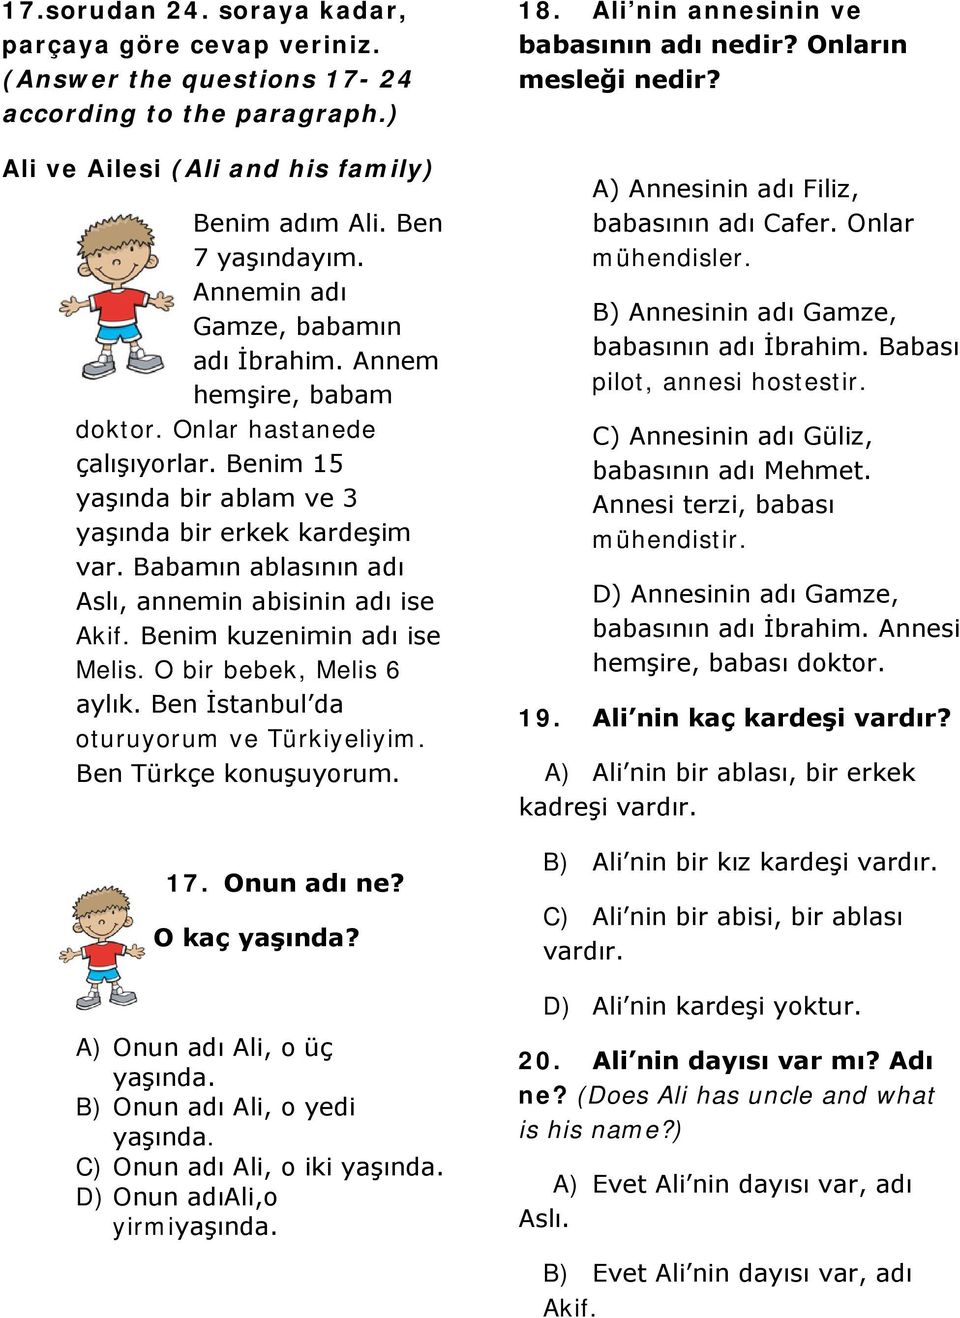 Babamın ablasının adı Aslı, annemin abisinin adı ise Akif. Benim kuzenimin adı ise Melis. O bir bebek, Melis 6 aylık. Ben İstanbul da oturuyorum ve Türkiyeliyim. Ben Türkçe konuşuyorum. 17.